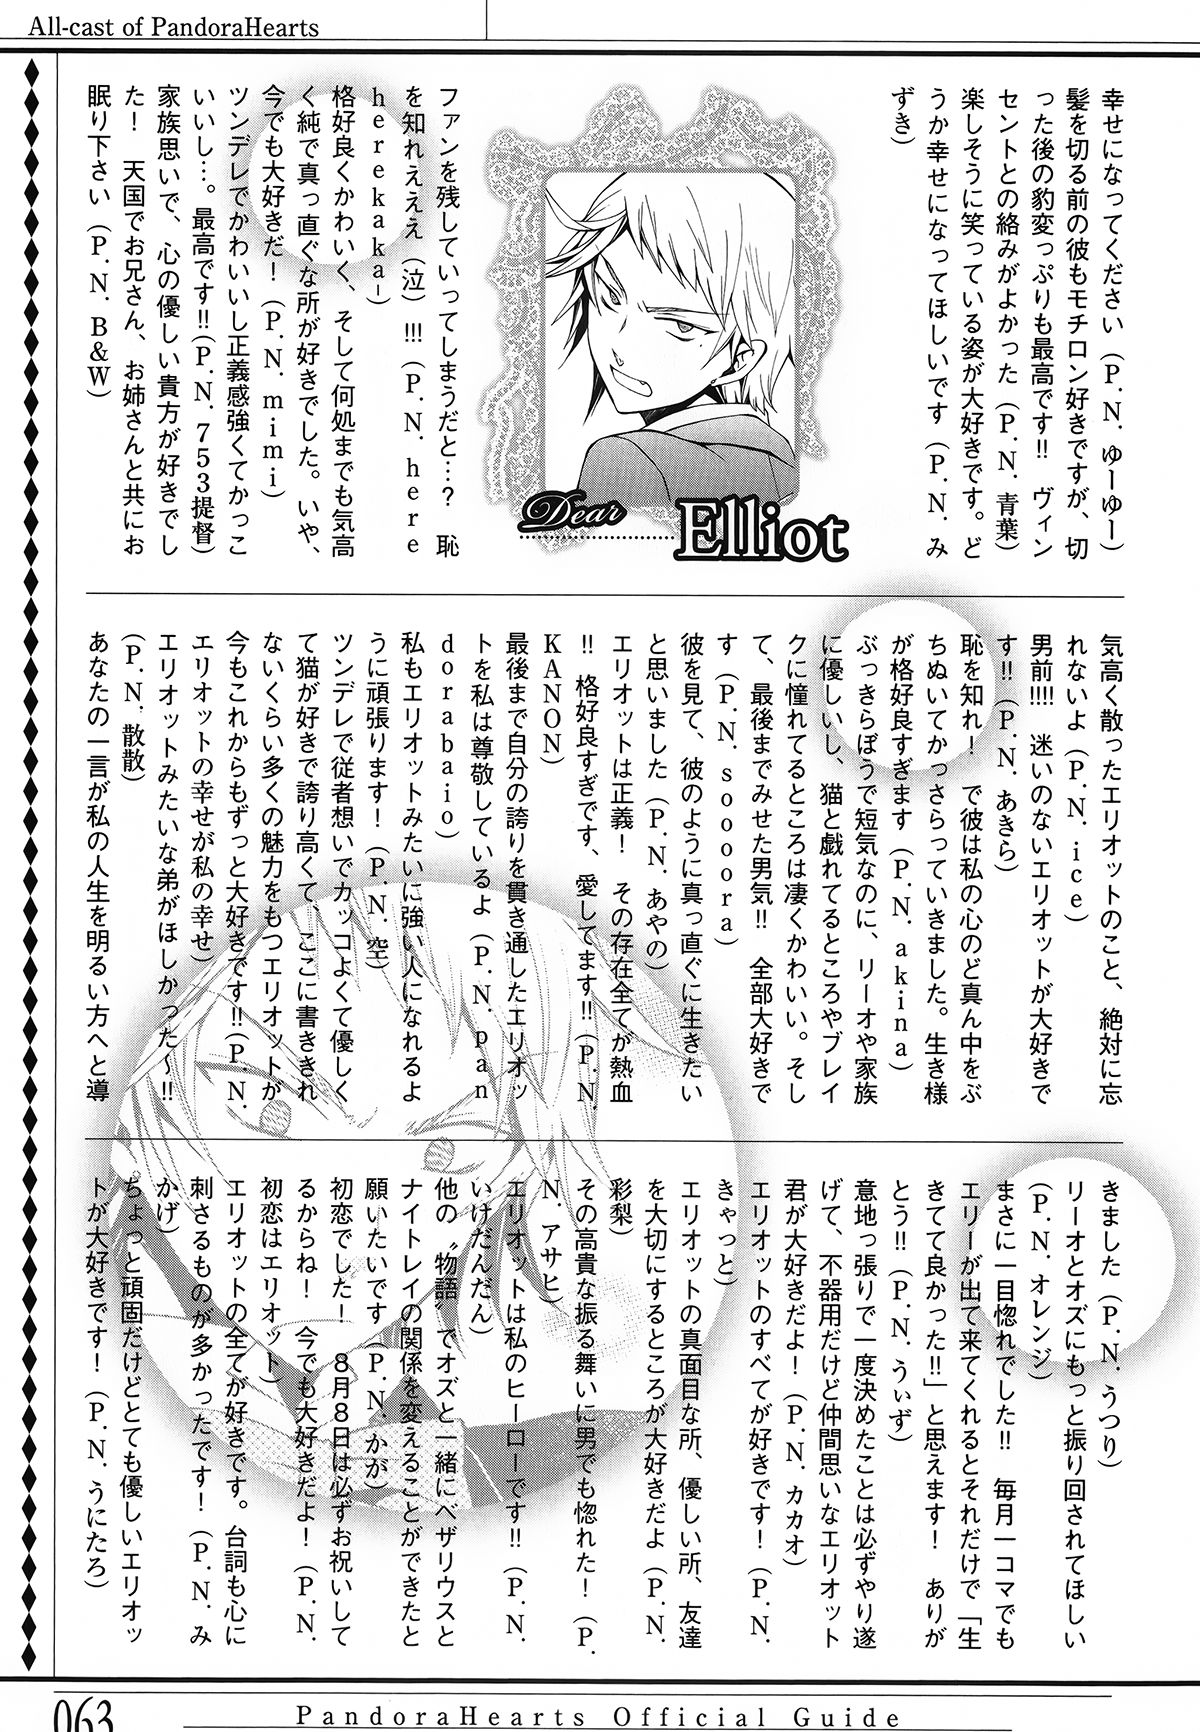 Pandora Hearts Guidebook 24+1: Last Dance パンドラハーツ オフィシャルガイド 24 + 1 ~Last Dance! 66